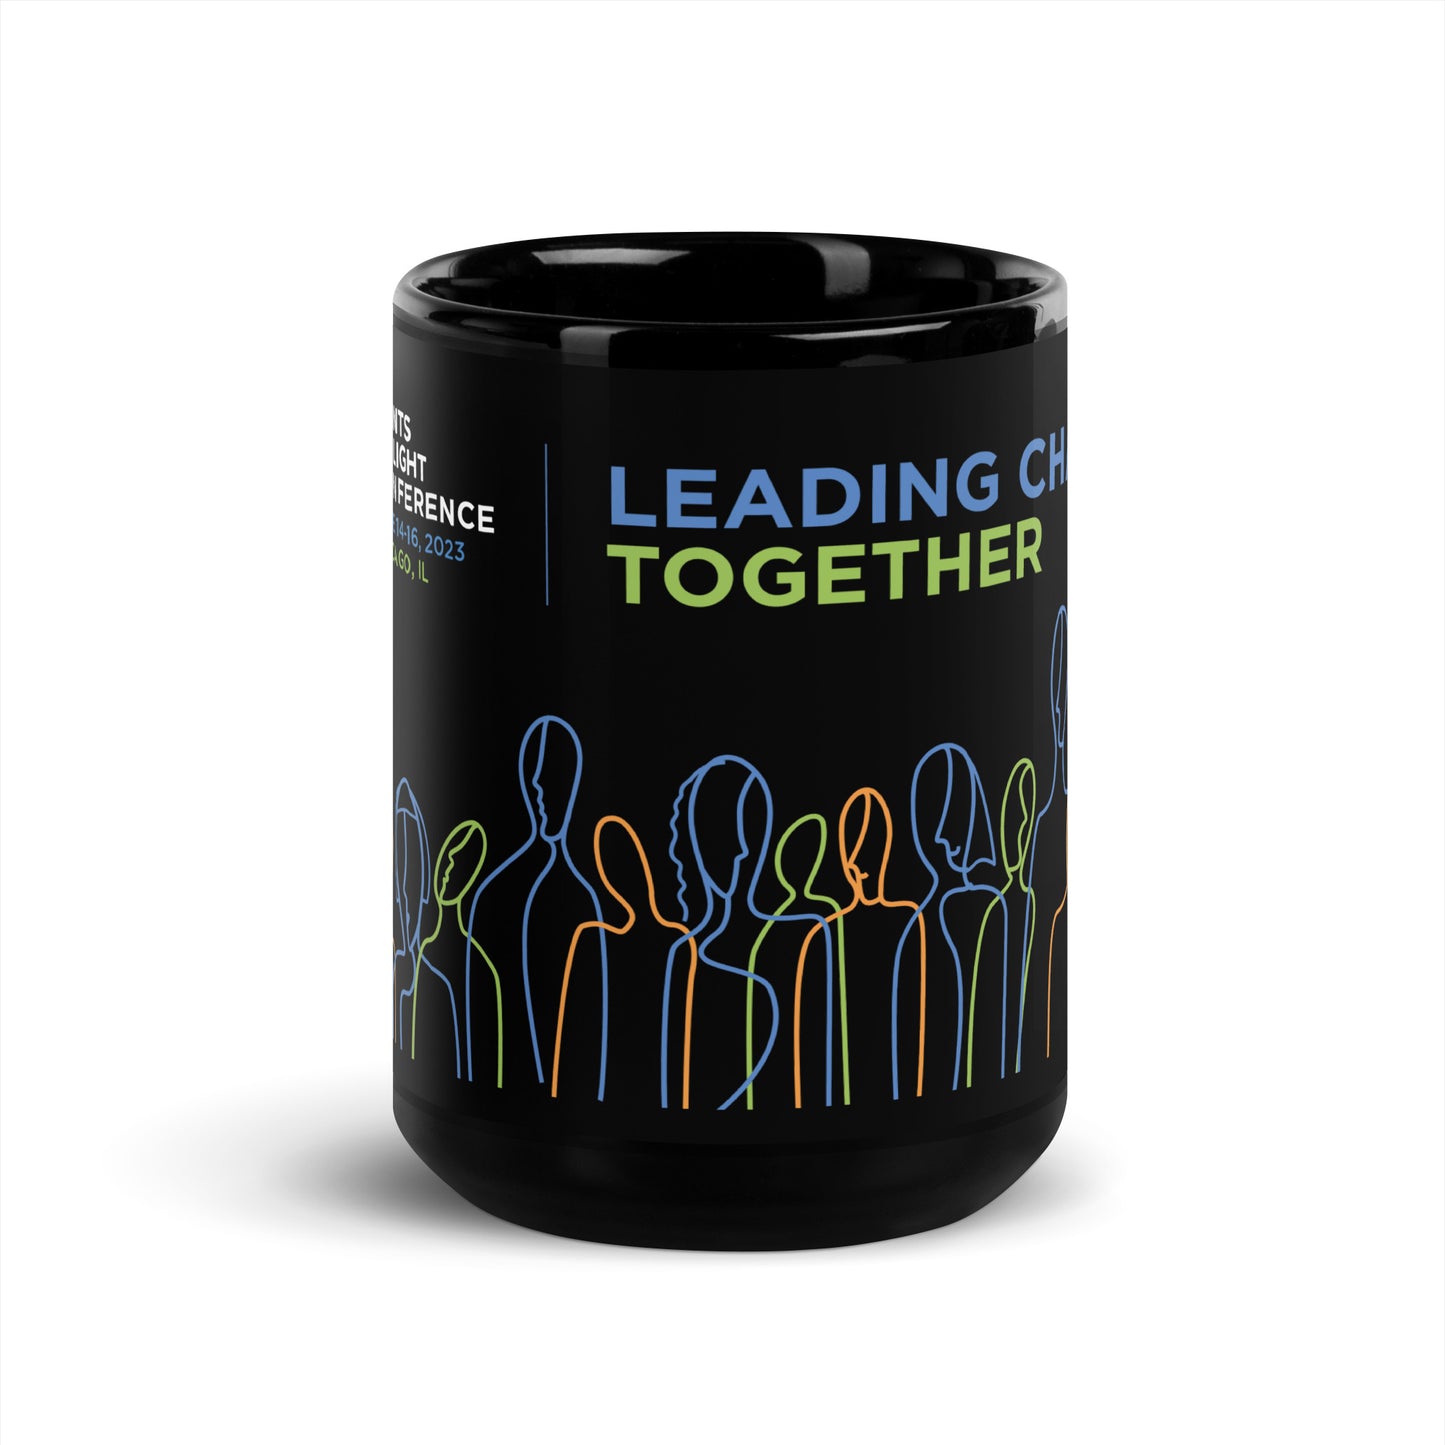 "Leading Change Together" Conference Mug